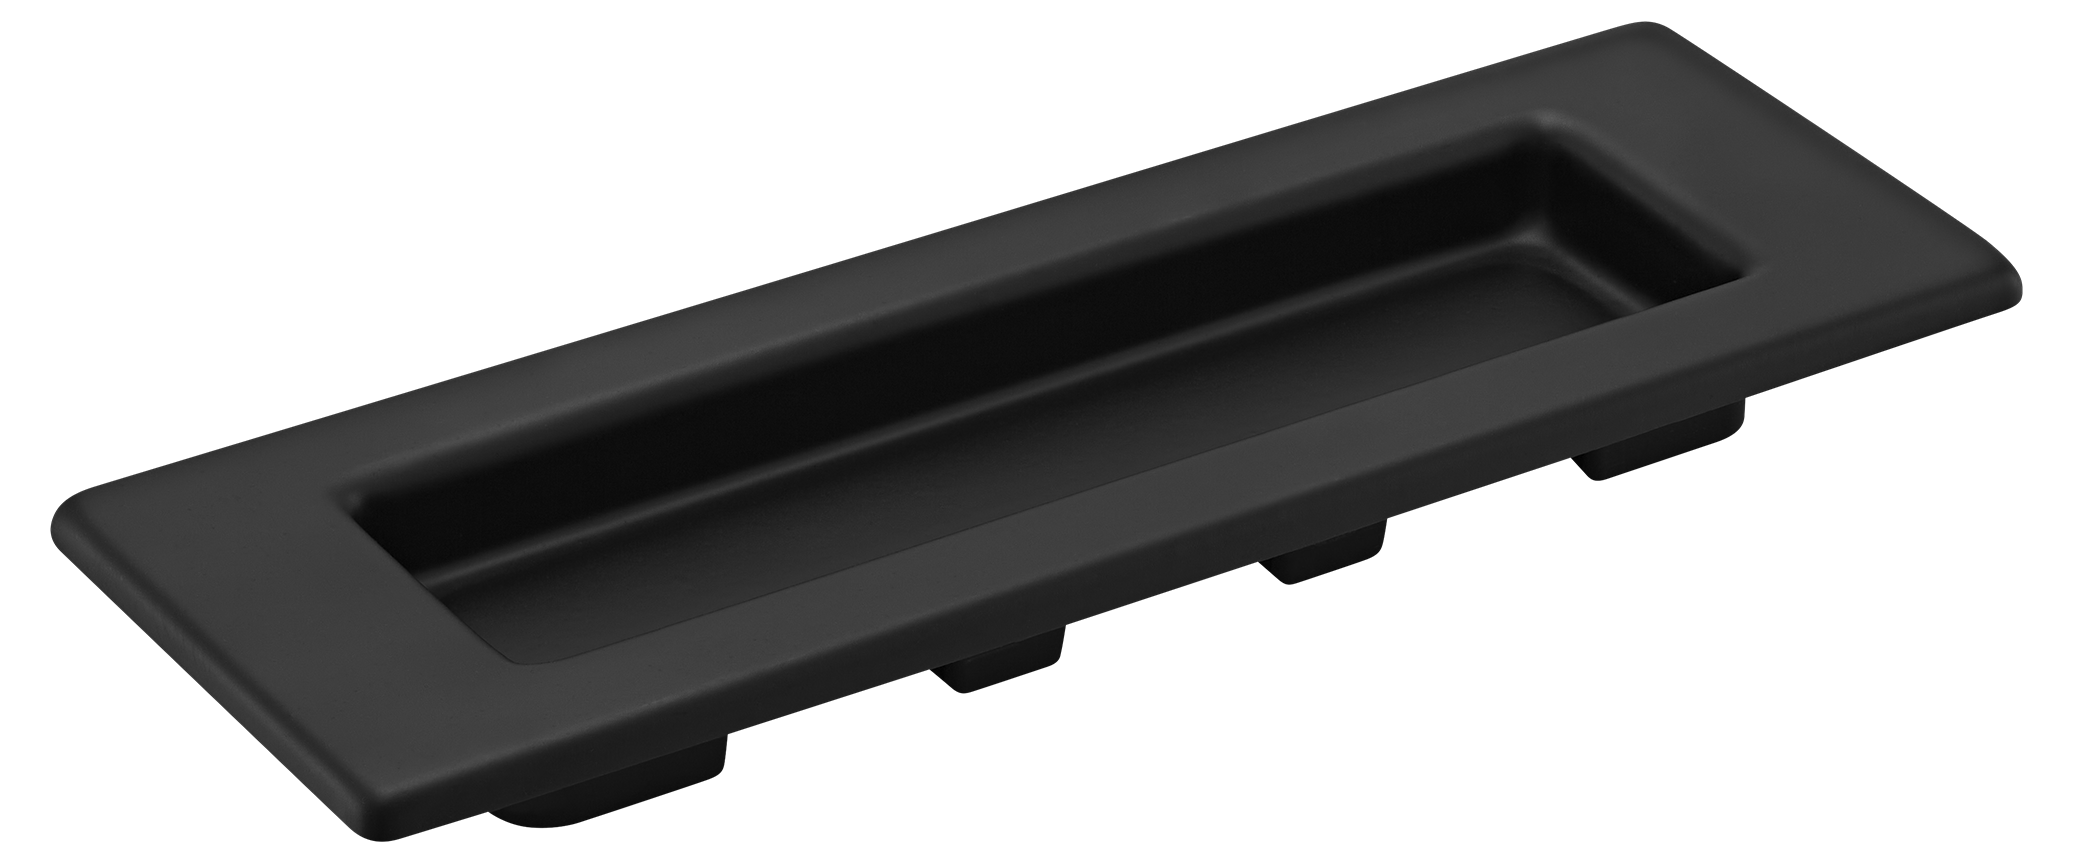 MHS153 BL, ручка для раздвижных дверей, цвет - черный фото купить Калининград